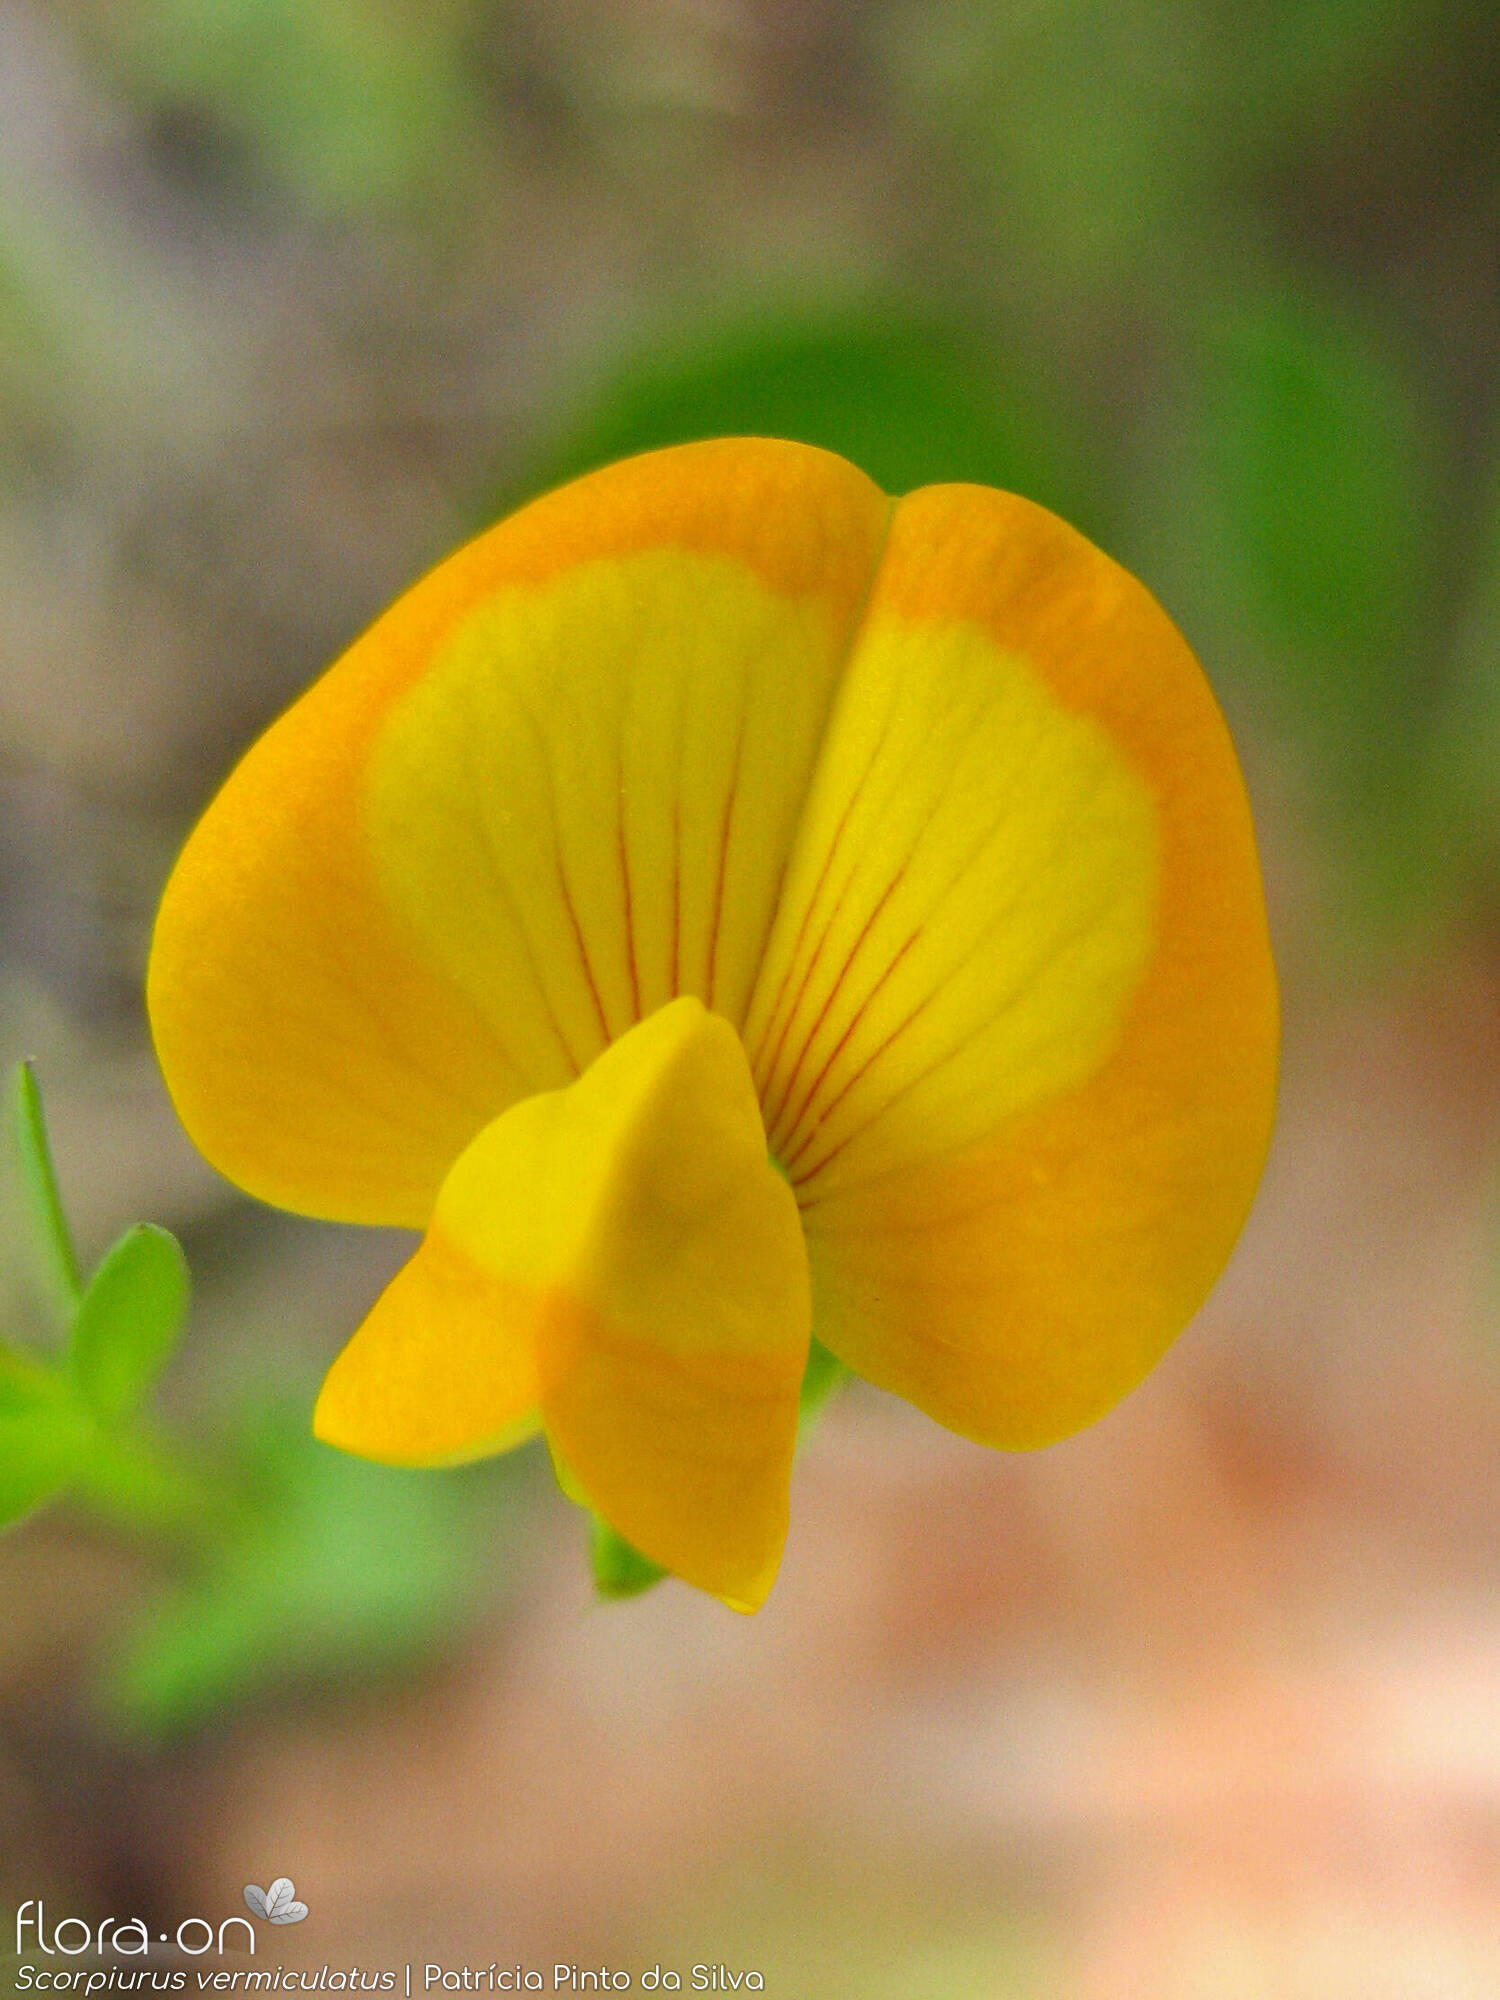 Scorpiurus vermiculatus - Flor (close-up) | Patrícia Pinto da Silva; CC BY-NC 4.0